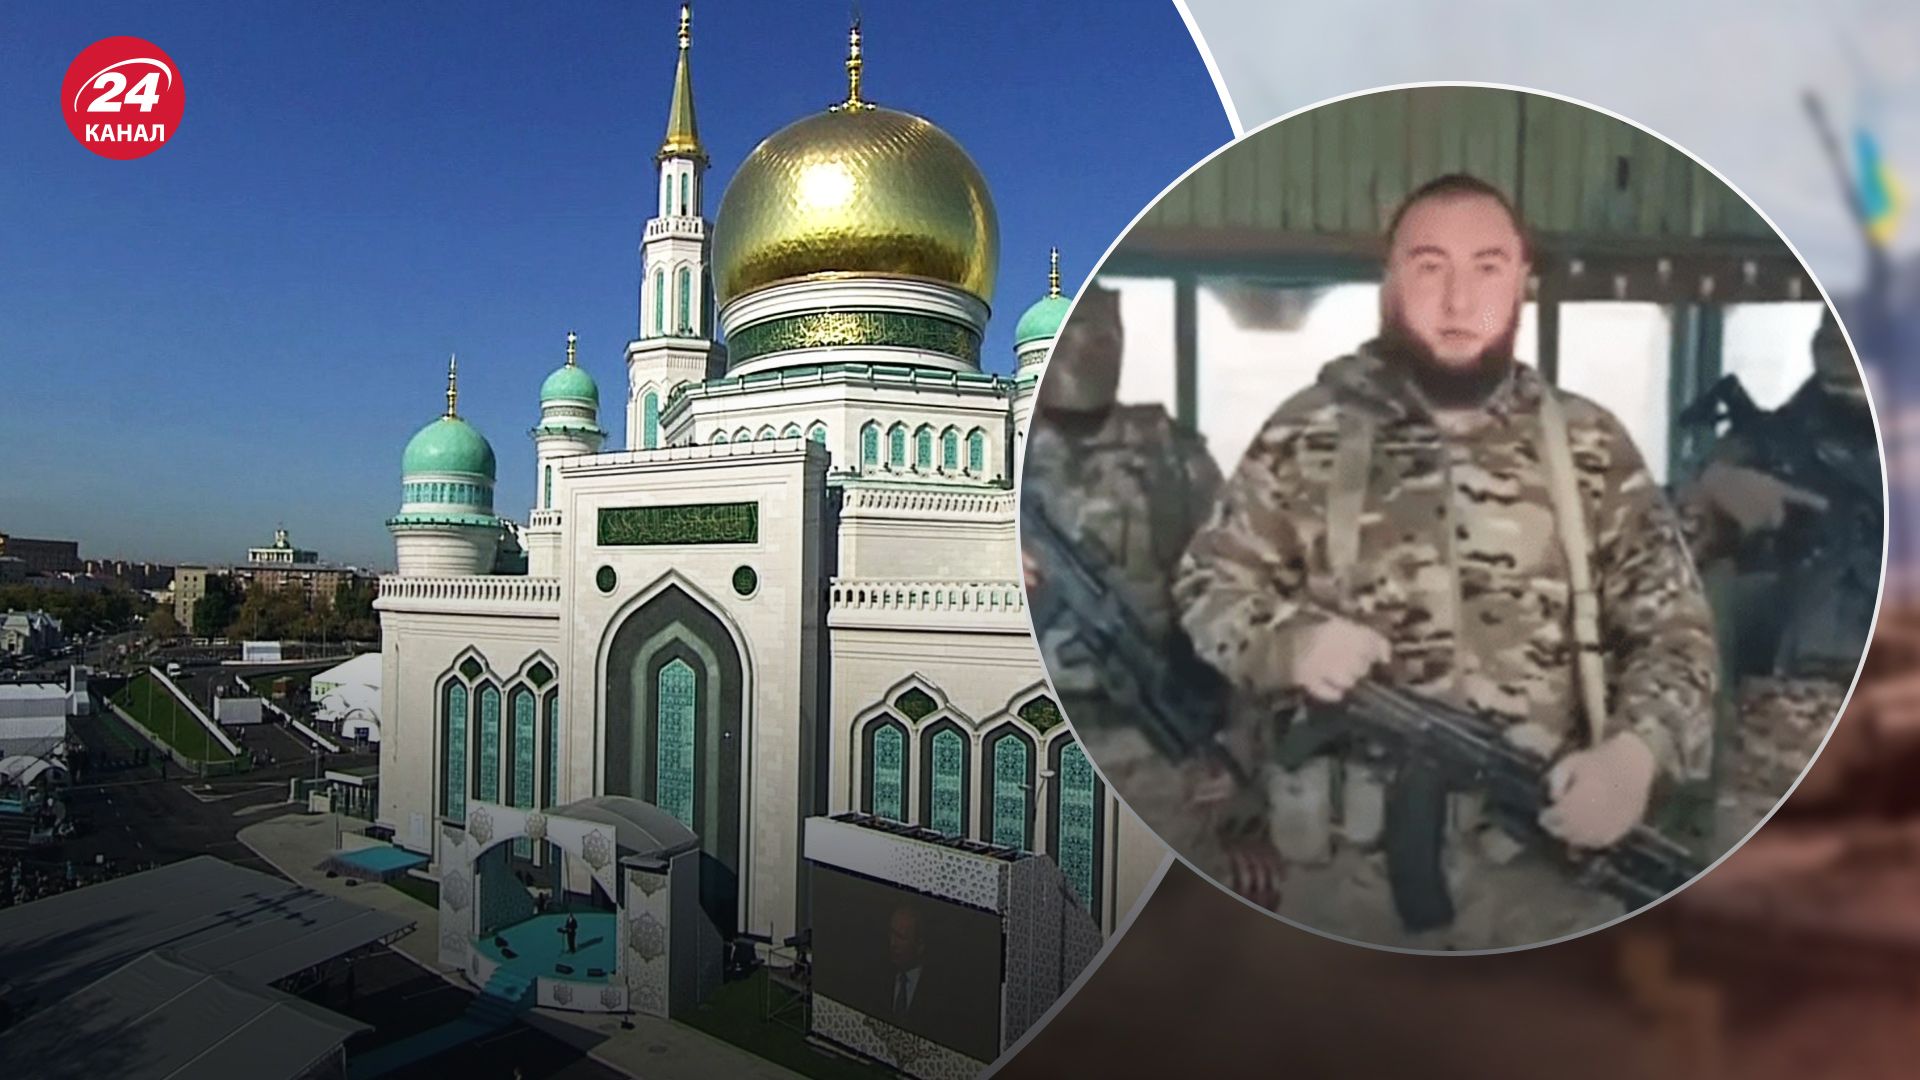 Кадыровцы хотят убивать россиян из-за строительства мечети